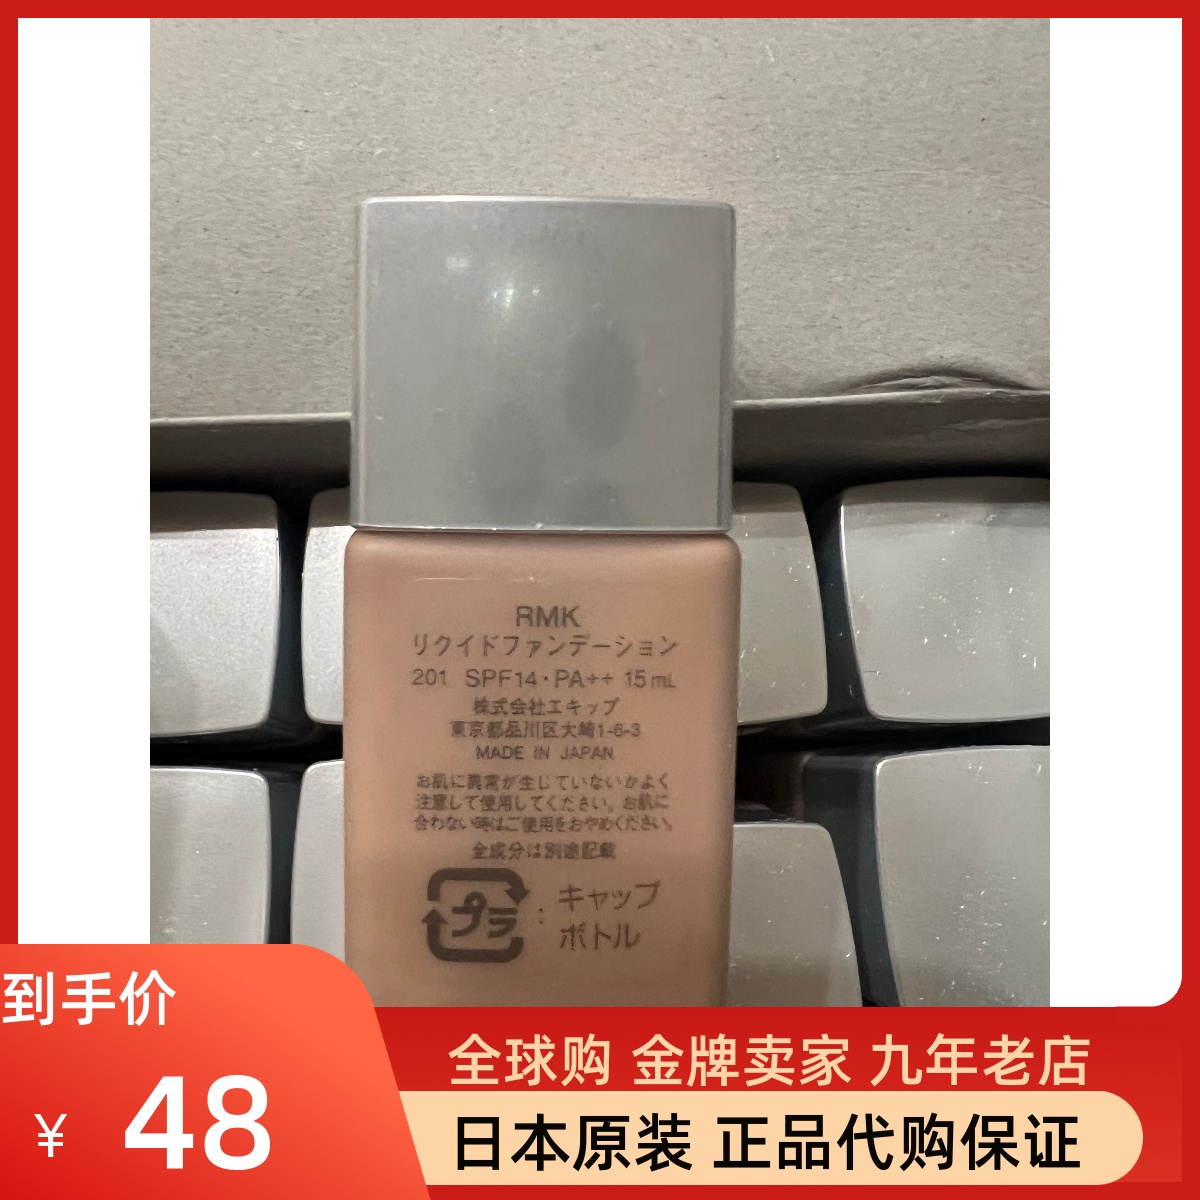 【现货包邮】日本原装 RMK经典丝薄粉底液人气色201 15ML小样